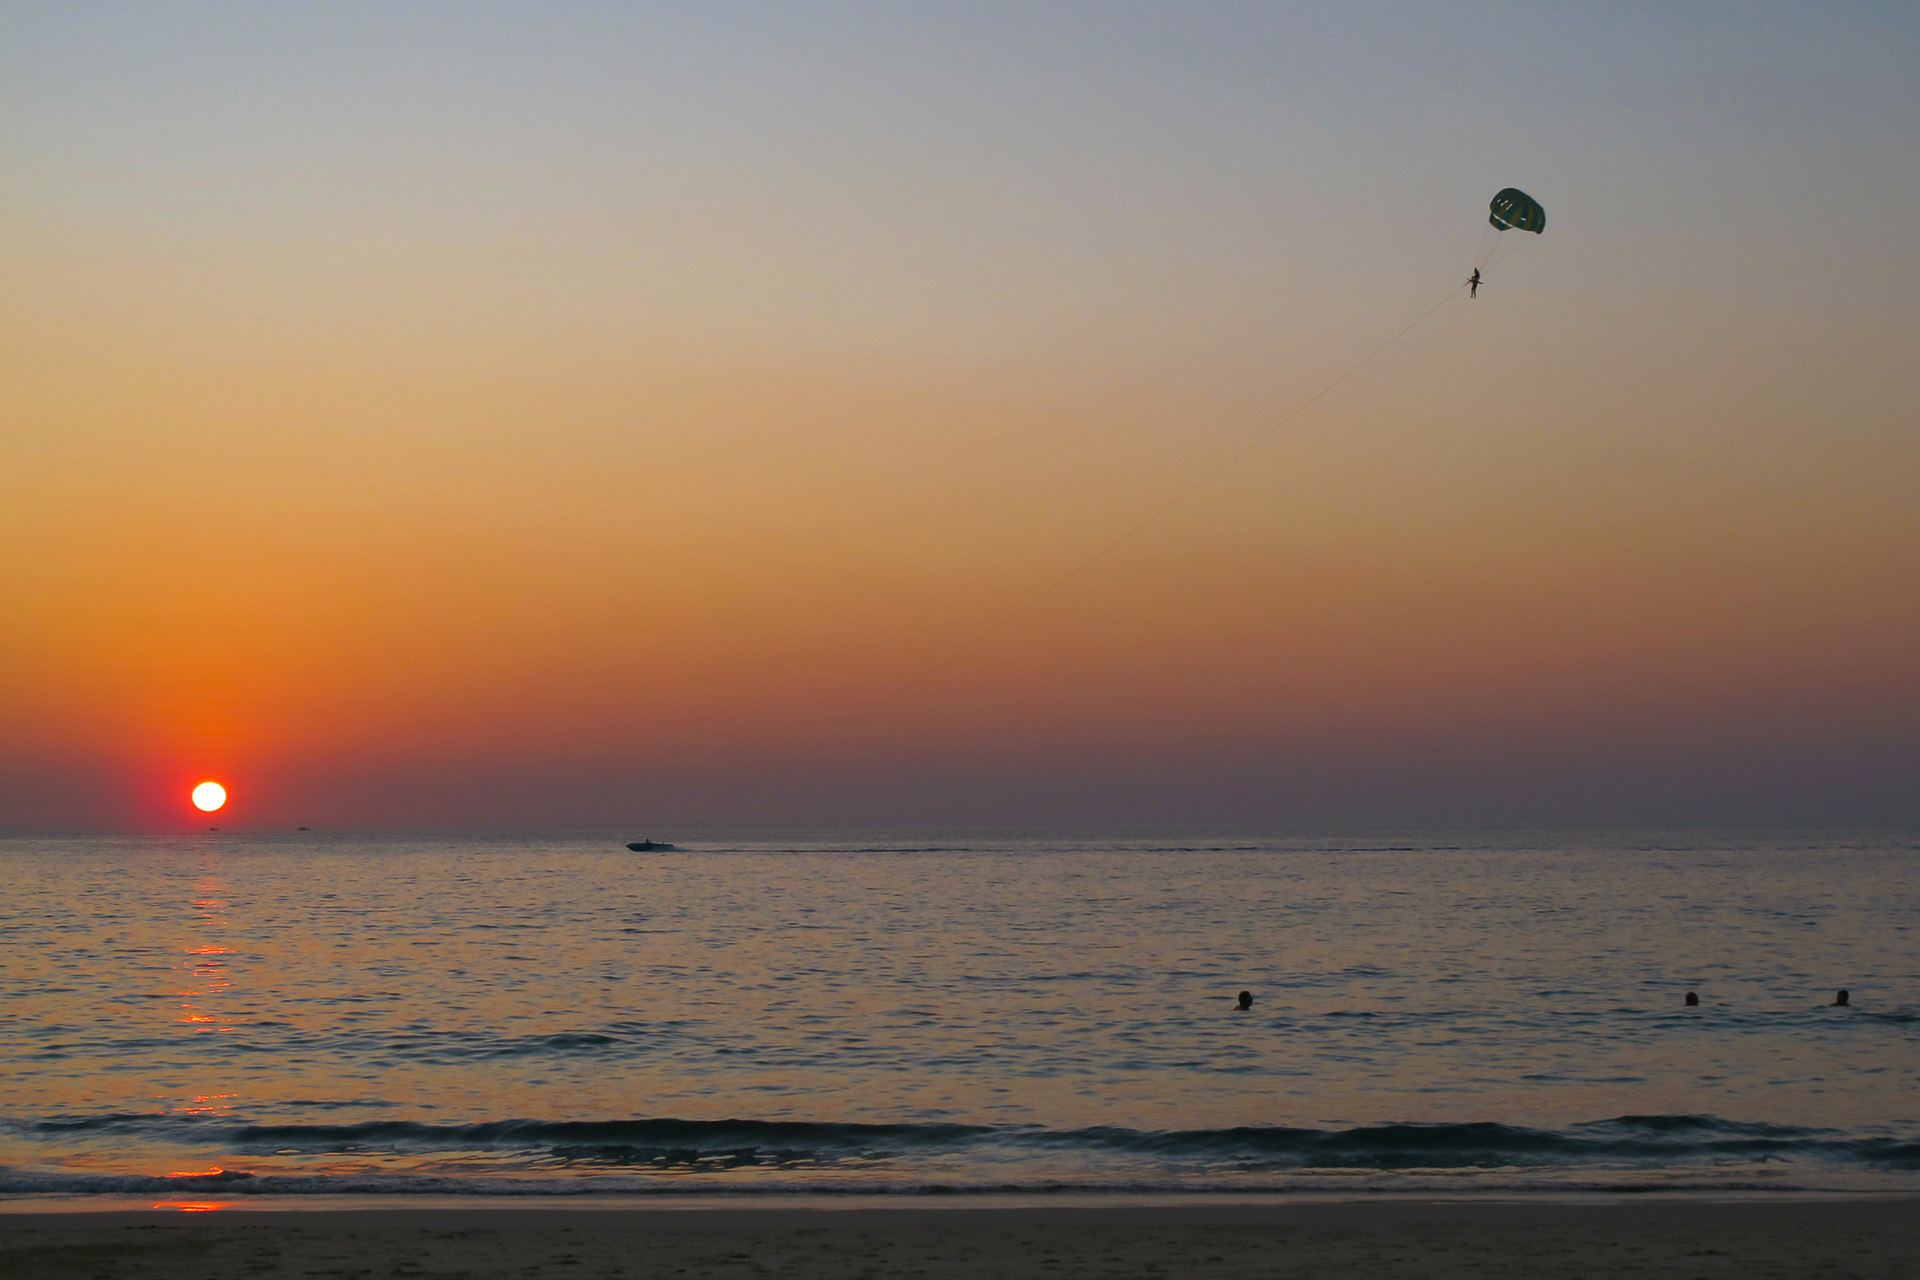 Parasailing over the sea at sunset at Karon Beach